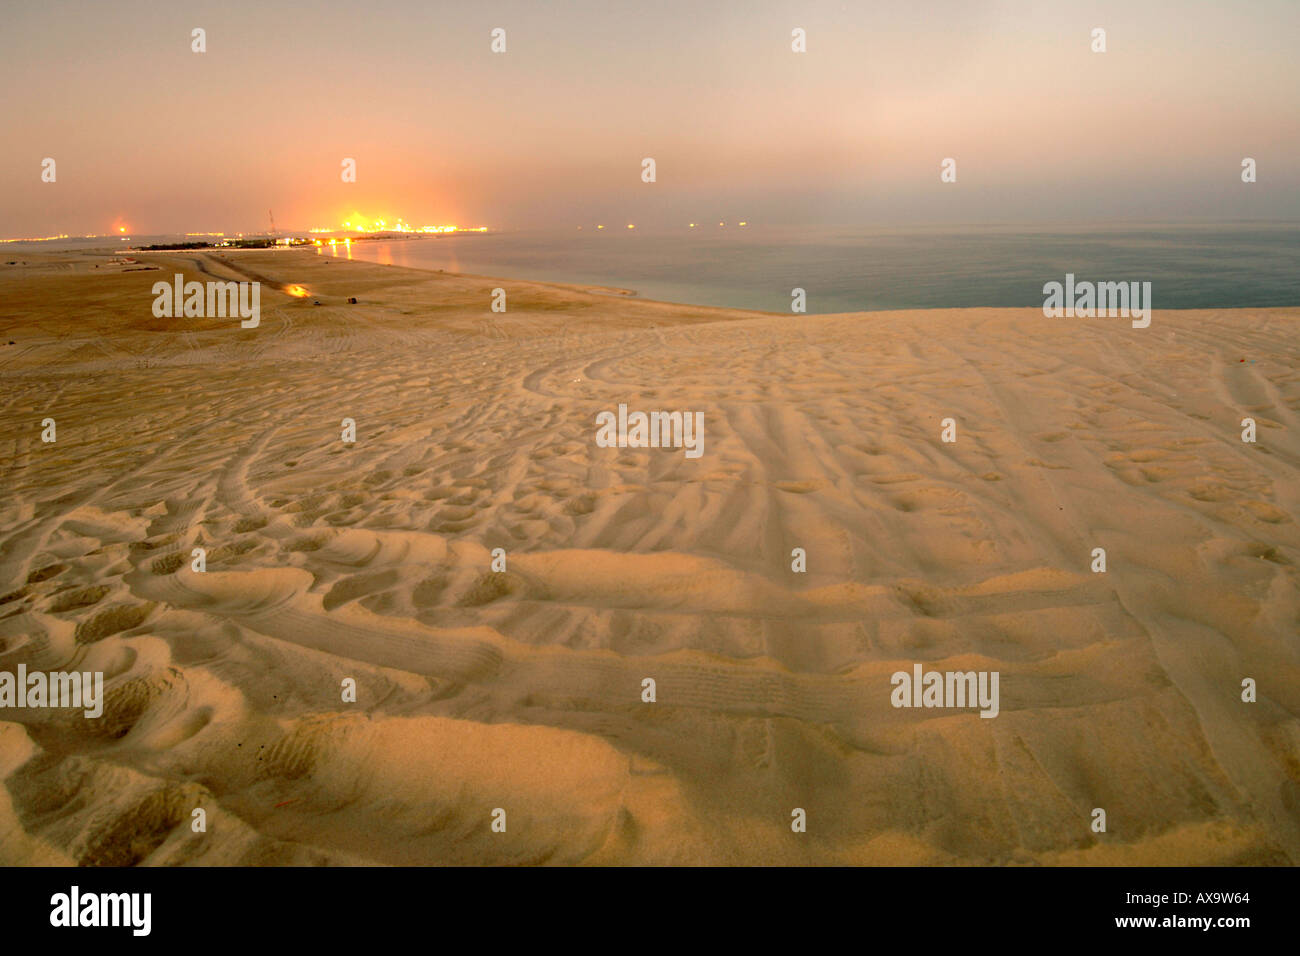 Industrielle Raffinerie von Binnenmeer (Khor al Adaid) im südlichen Katar gesehen. Stockfoto